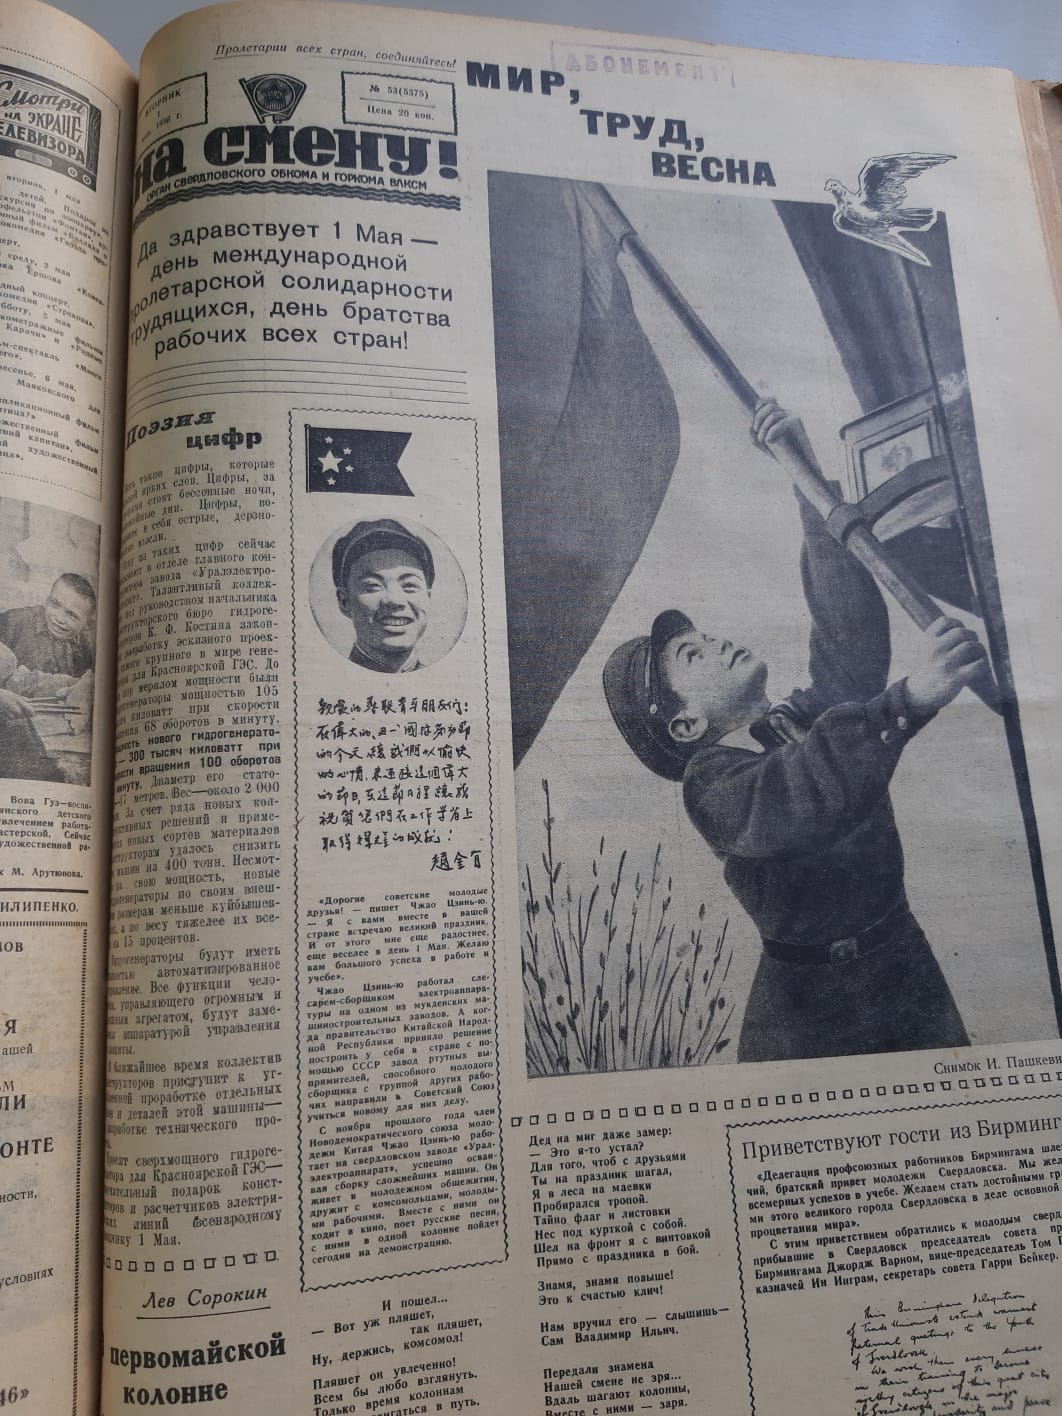 В 1956 году в газете «На смену!» про Первомай писали как про день международной пролетарской солидарности трудящихся и день братства рабочих всех стран